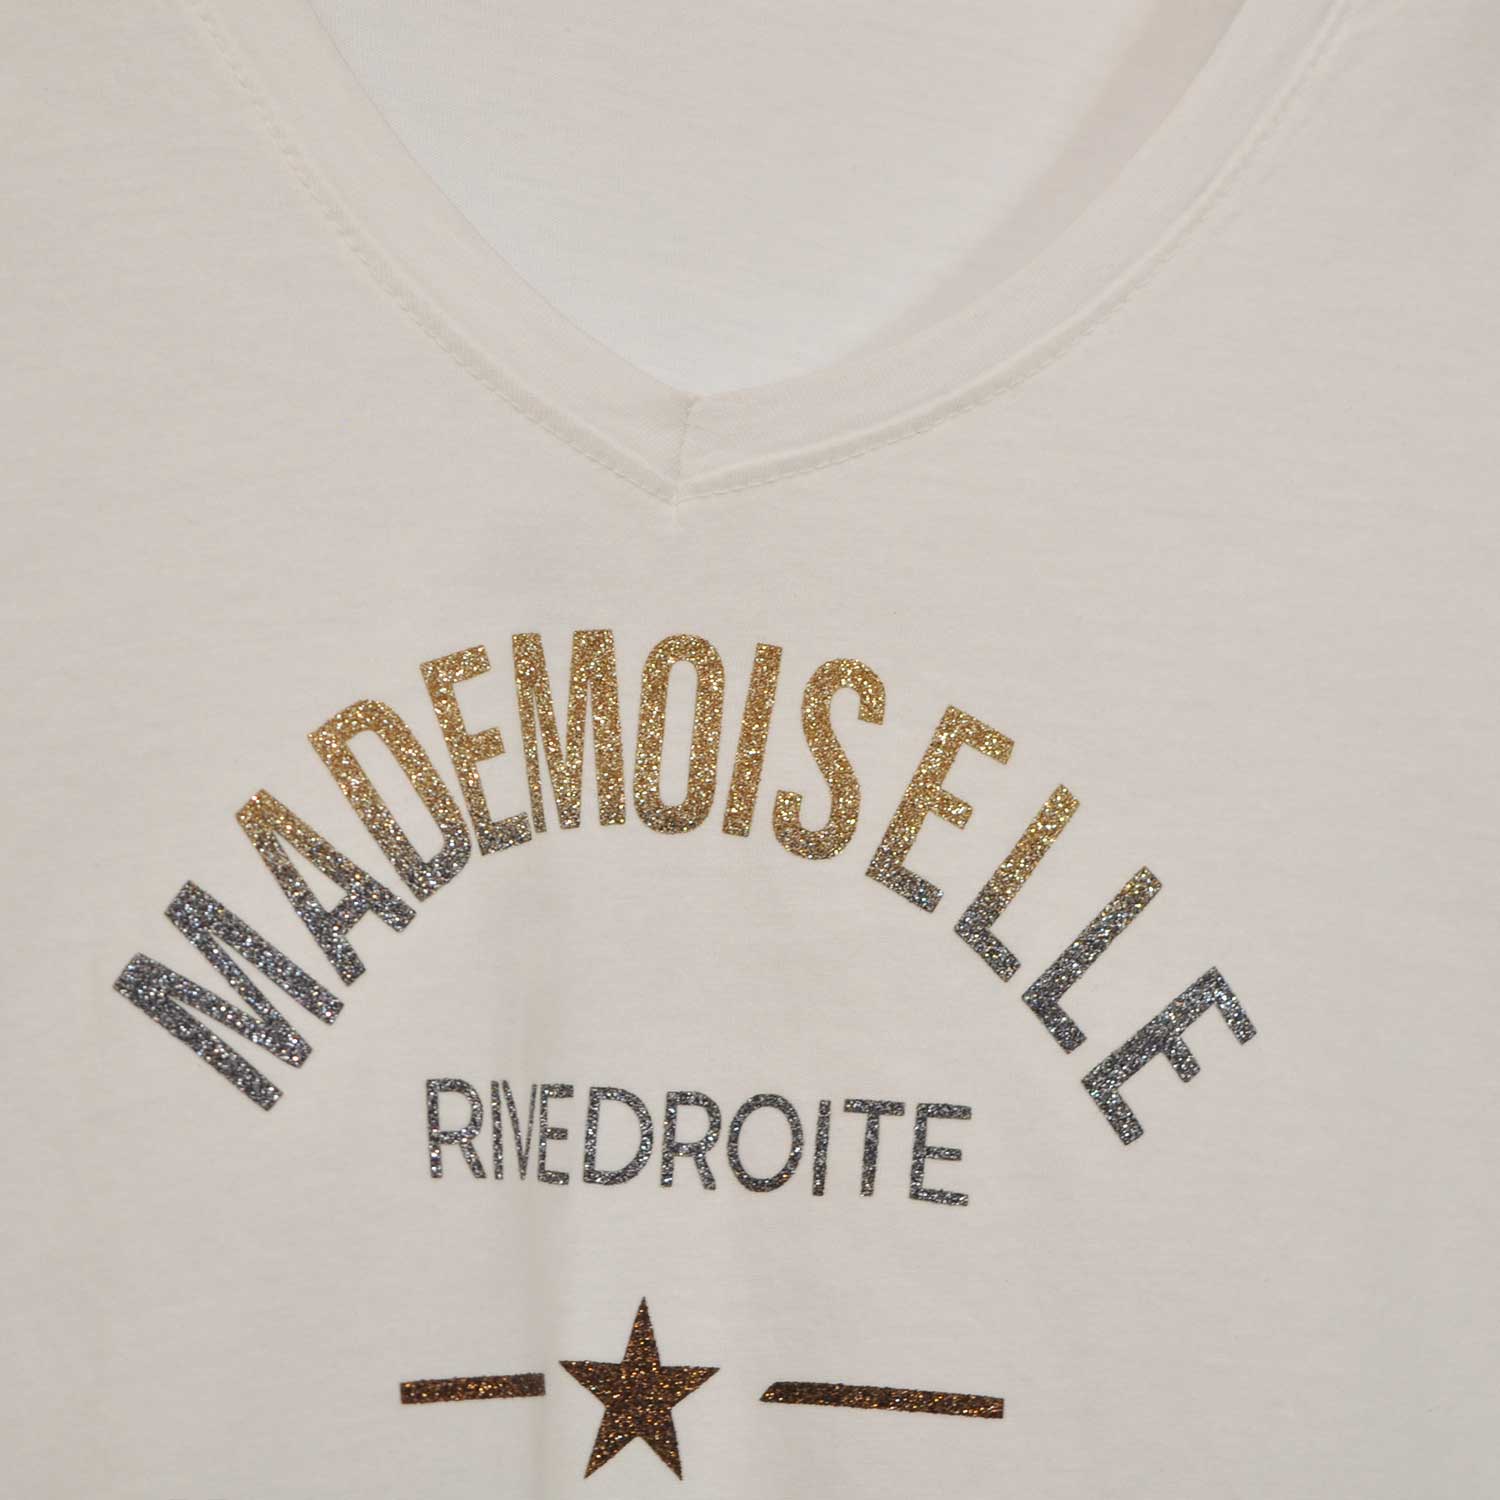 Camiseta Mademoiselle